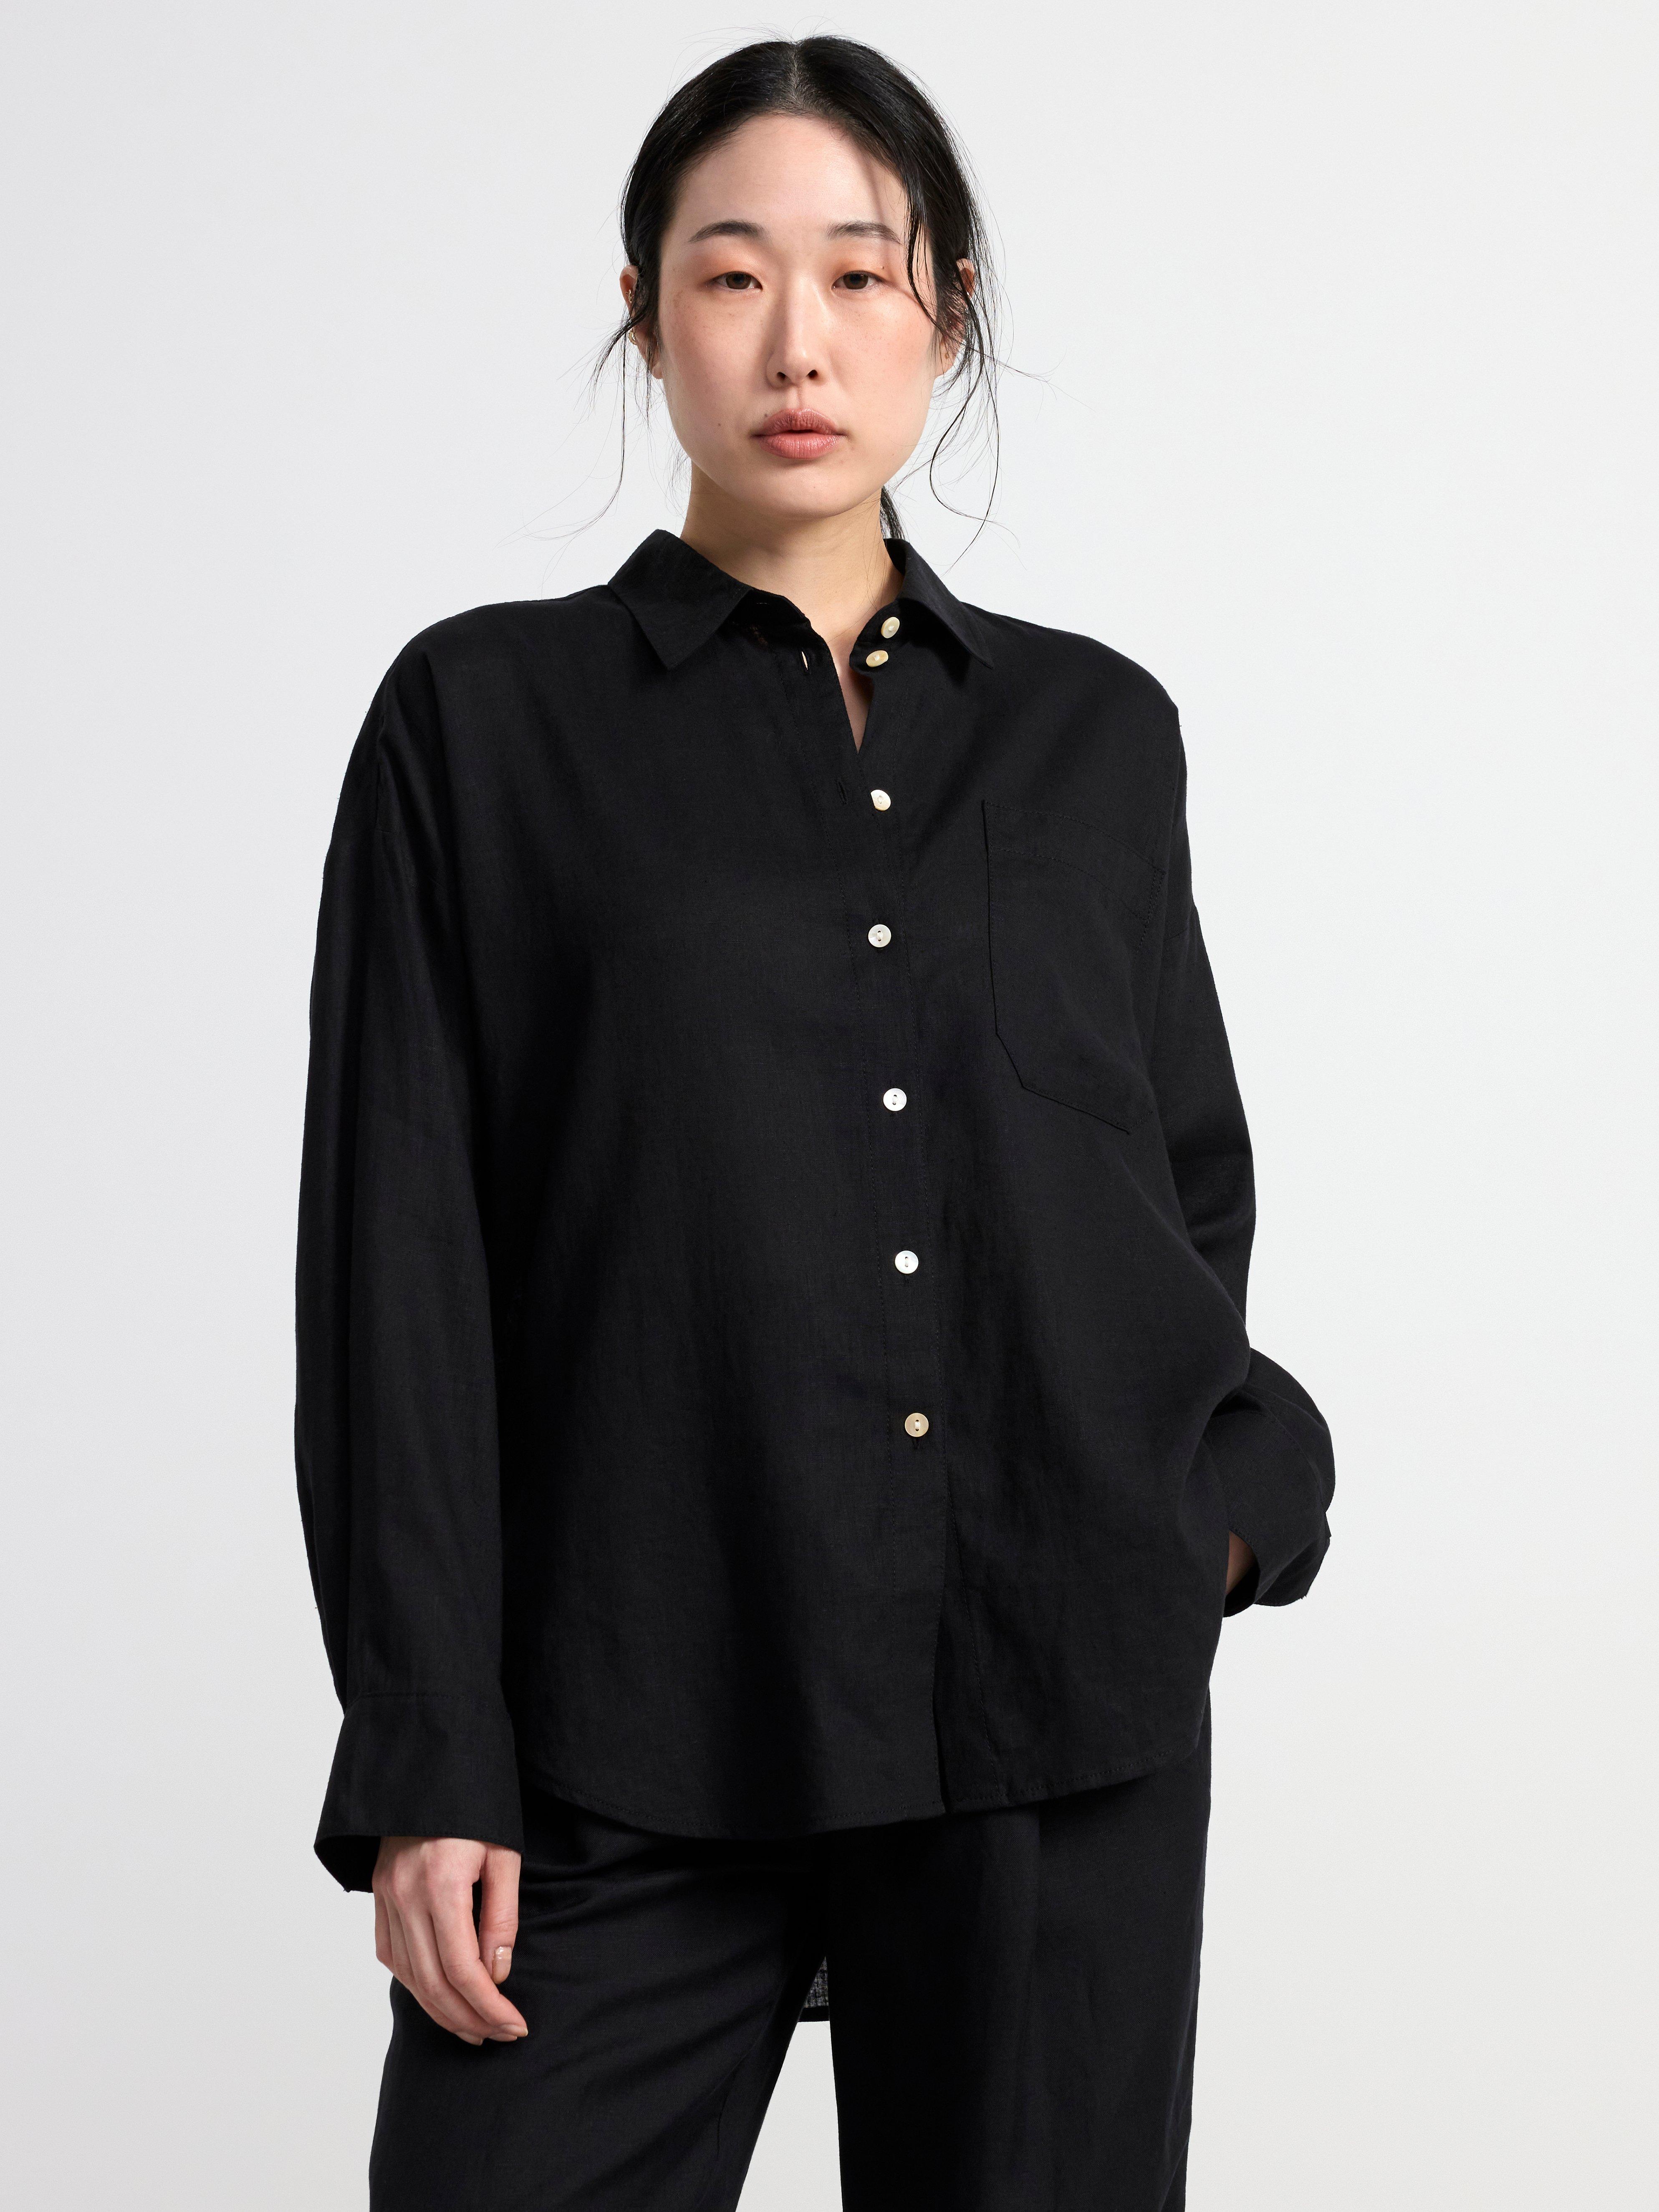 Paris Linen Frill Shirt Black, 56% OFF